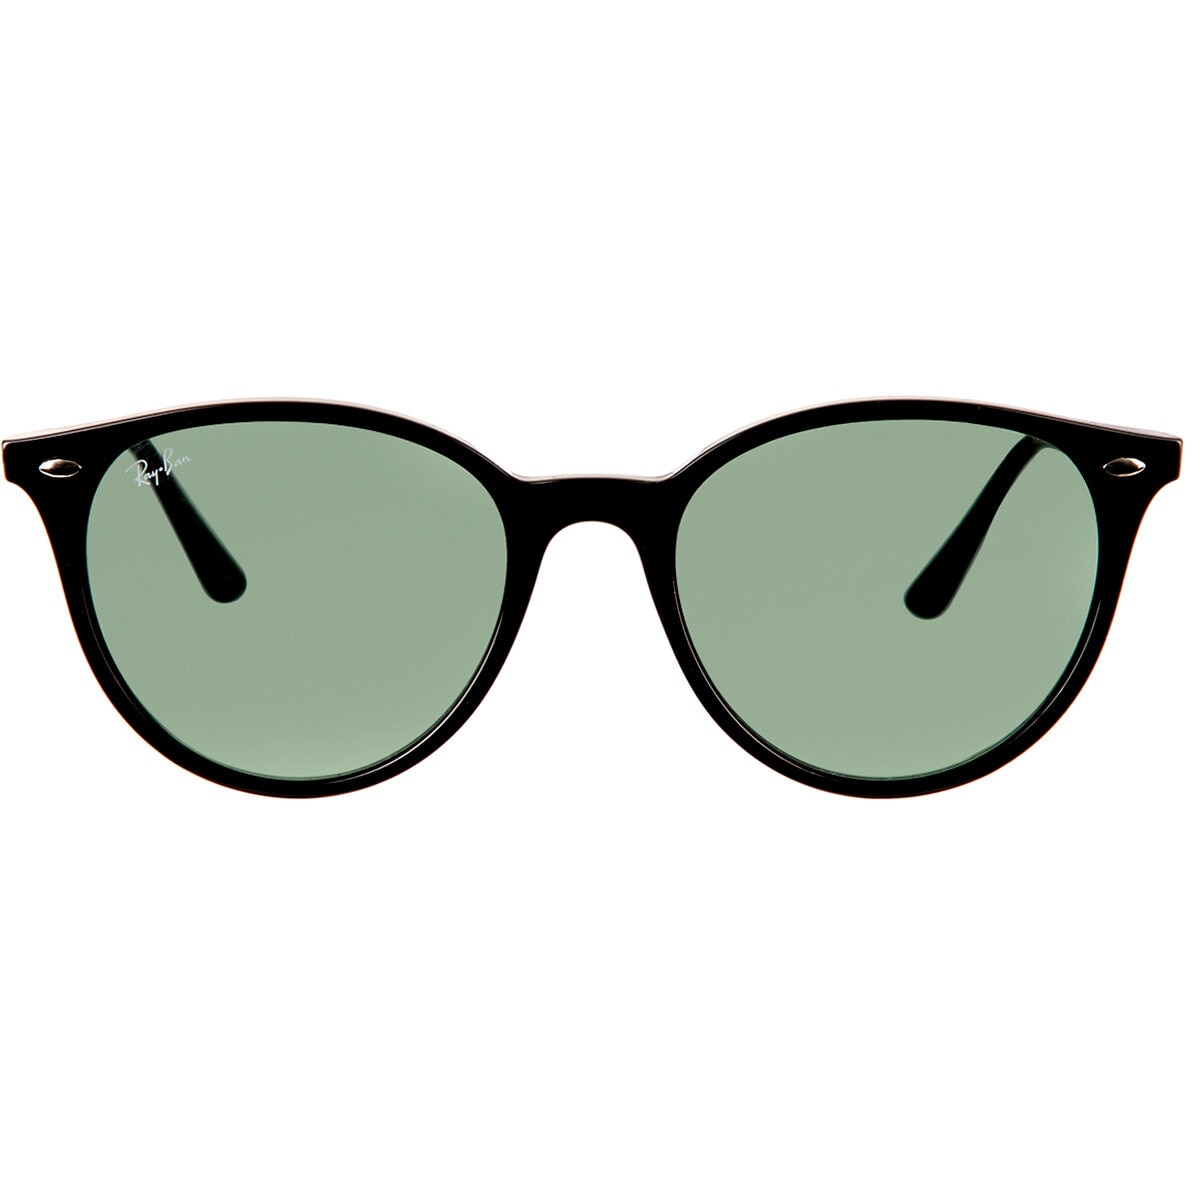 Ray-Ban Bill Sunglasses Frame Green Lenses Polarized in Black Womens Sunglasses Ray-Ban Sunglasses 